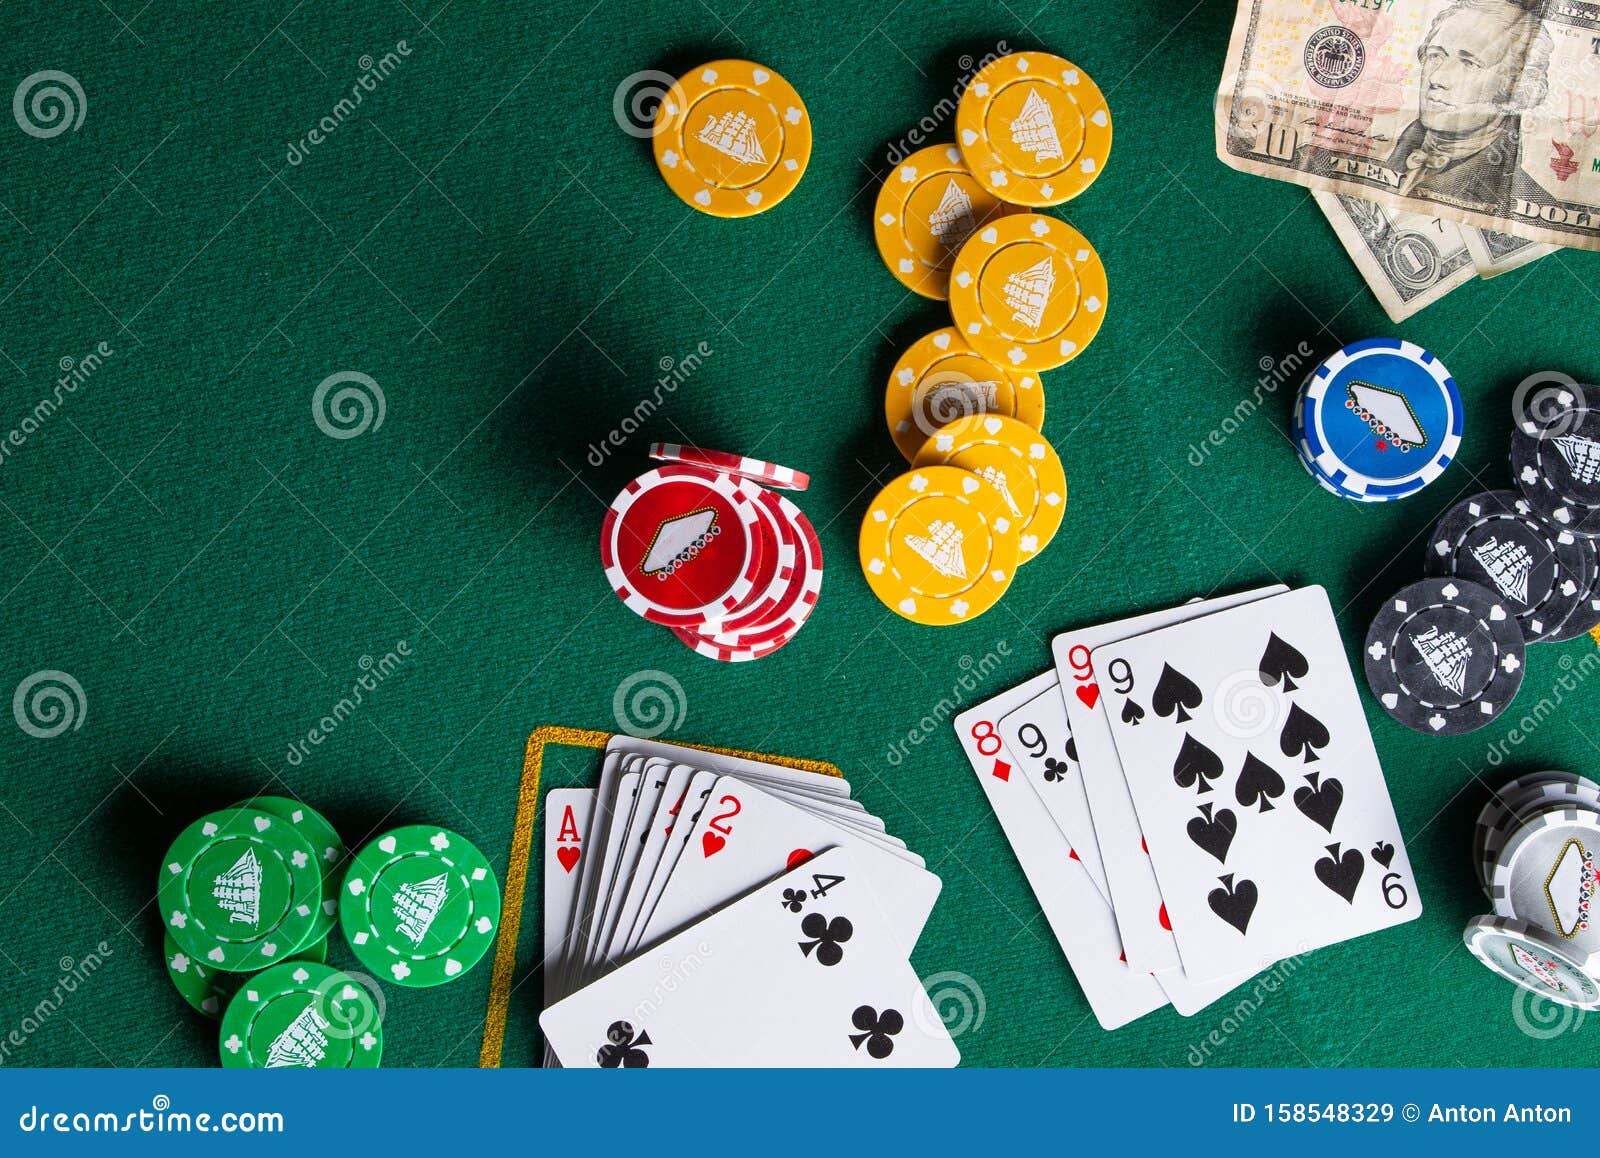 играть онлайн в азартные игры карты